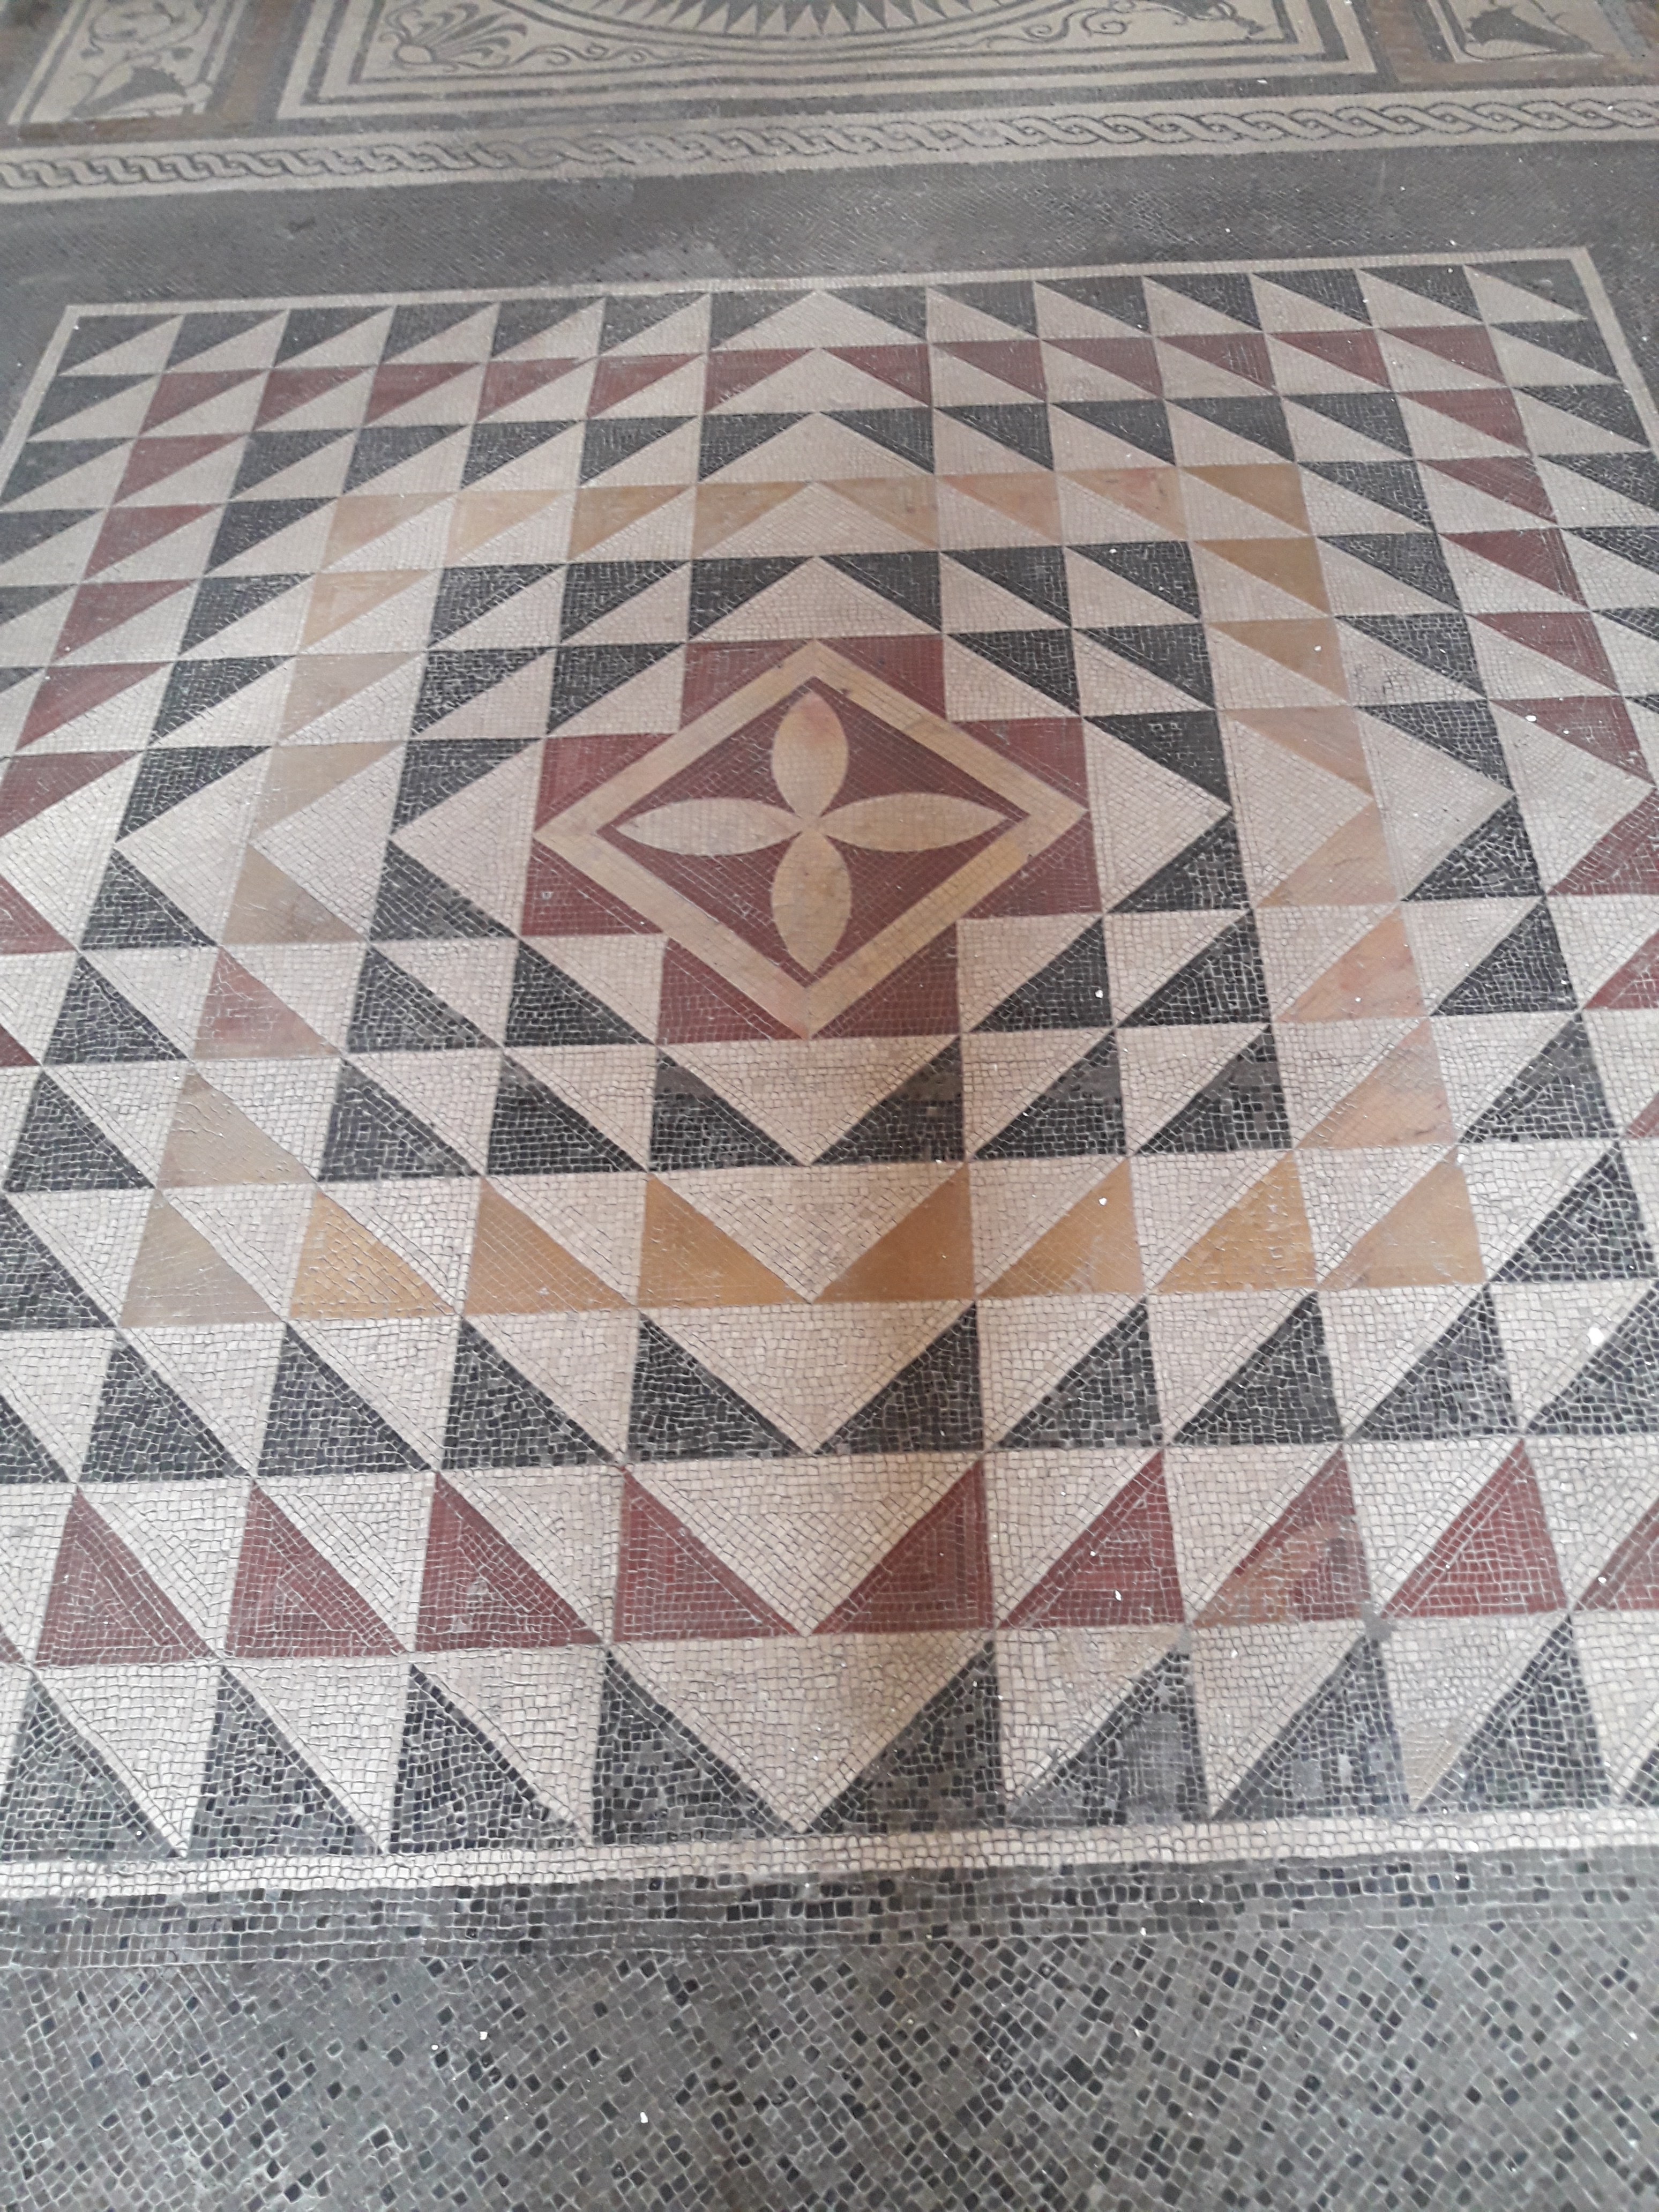 An ancient
                  mosaic